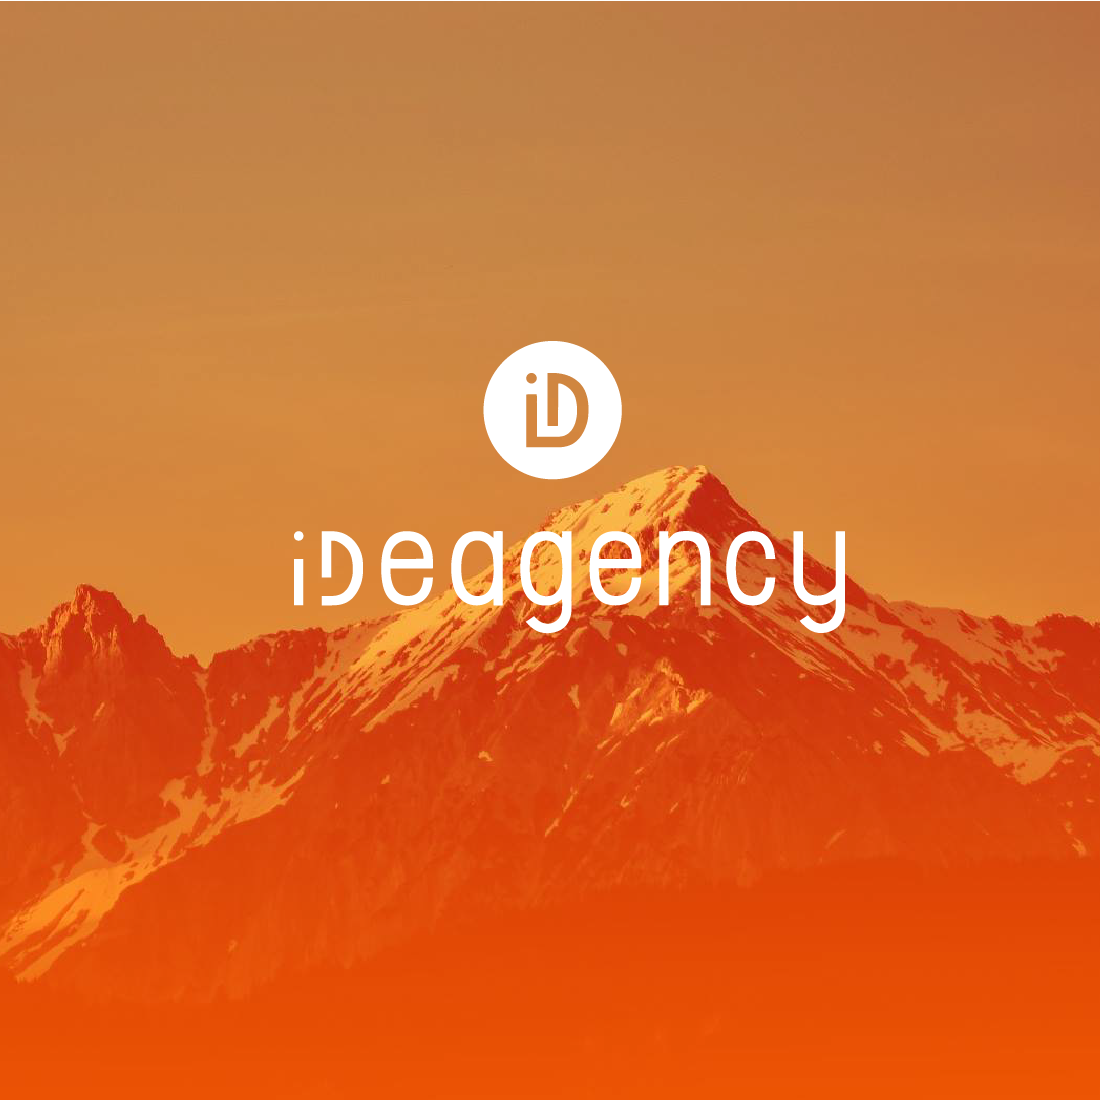 ideagency_aperçu